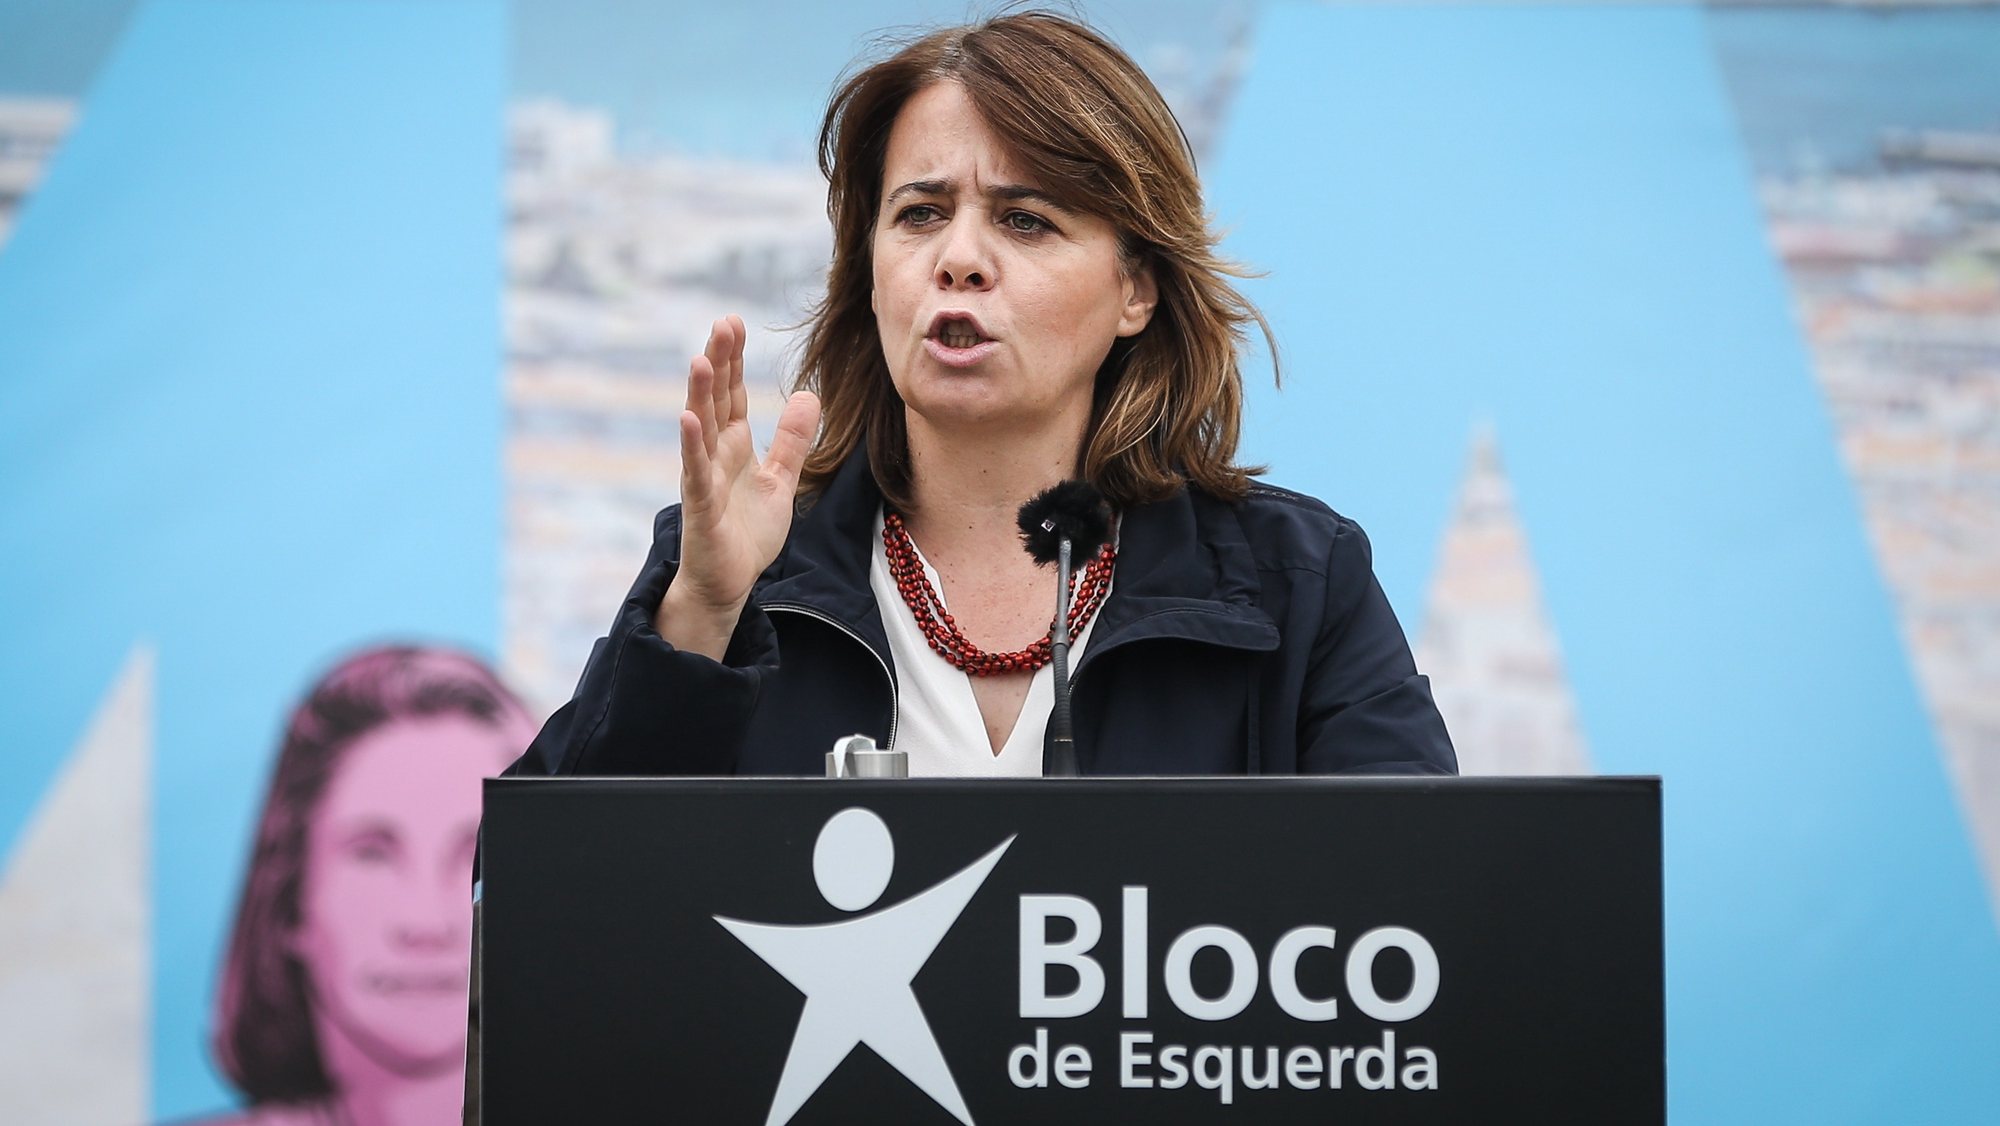 A coordenadora do Bloco de Esquerda (BE), Catarina Martins, discursa durante a apresentação dos candidatos aos órgãos autárquicos do Bloco de Esquerda, em Almada, 16 de maio de 2021.  RODRIGO ANTUNES/LUSA